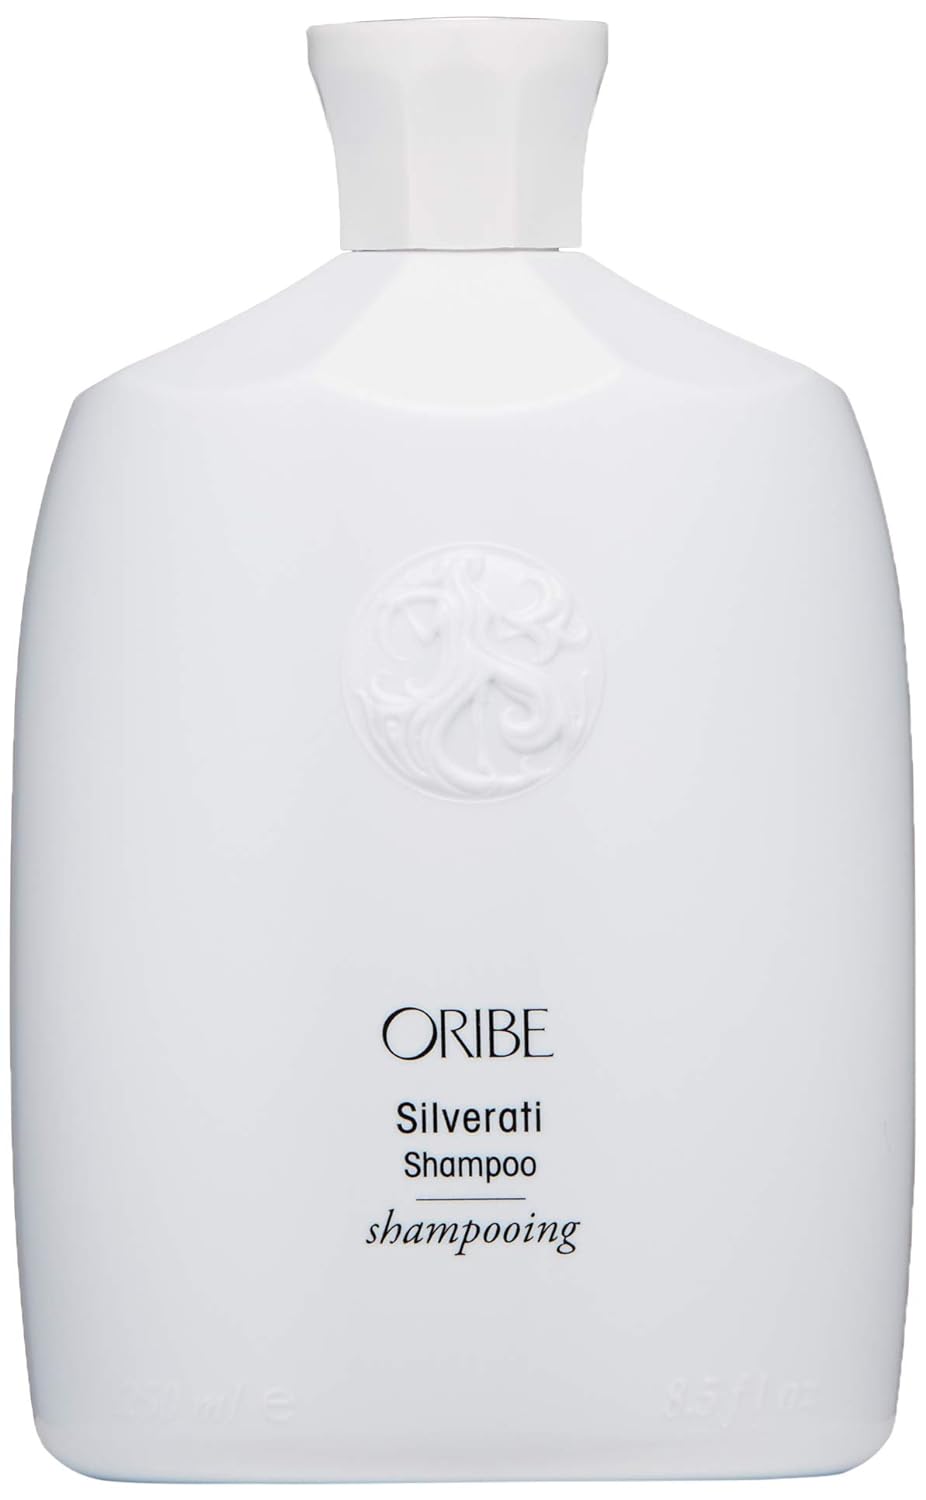 Oribe Silverati Shampoo, 8.5 oz